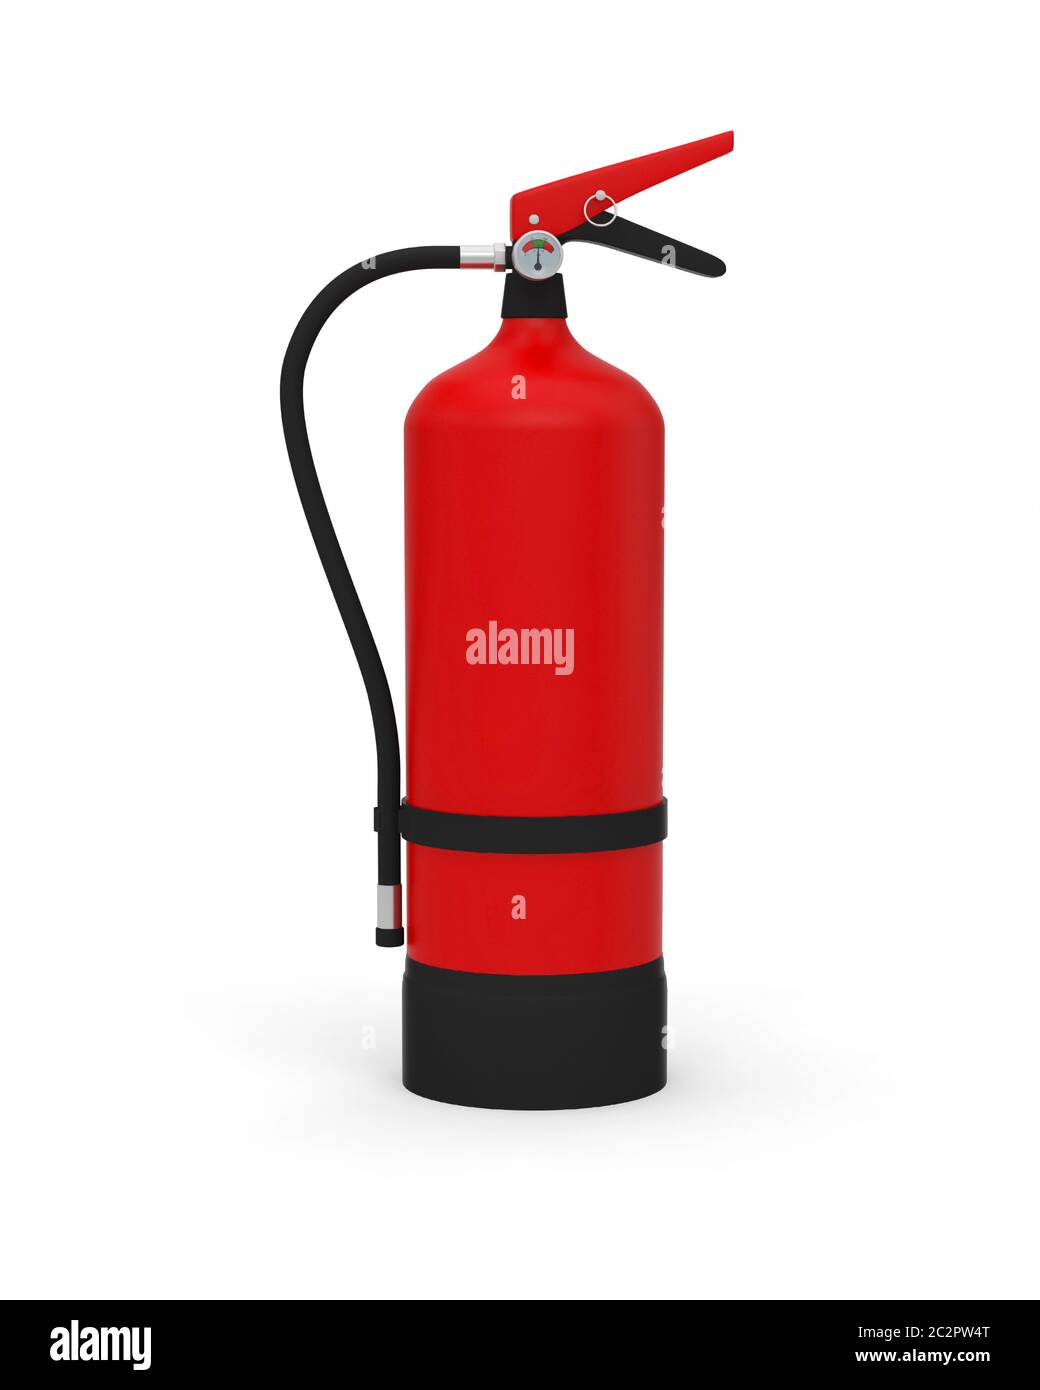 Feuerlöscher Ausrüstung Sicherheit Feuer rot Schutz sichere Rettung 3D Stockfoto